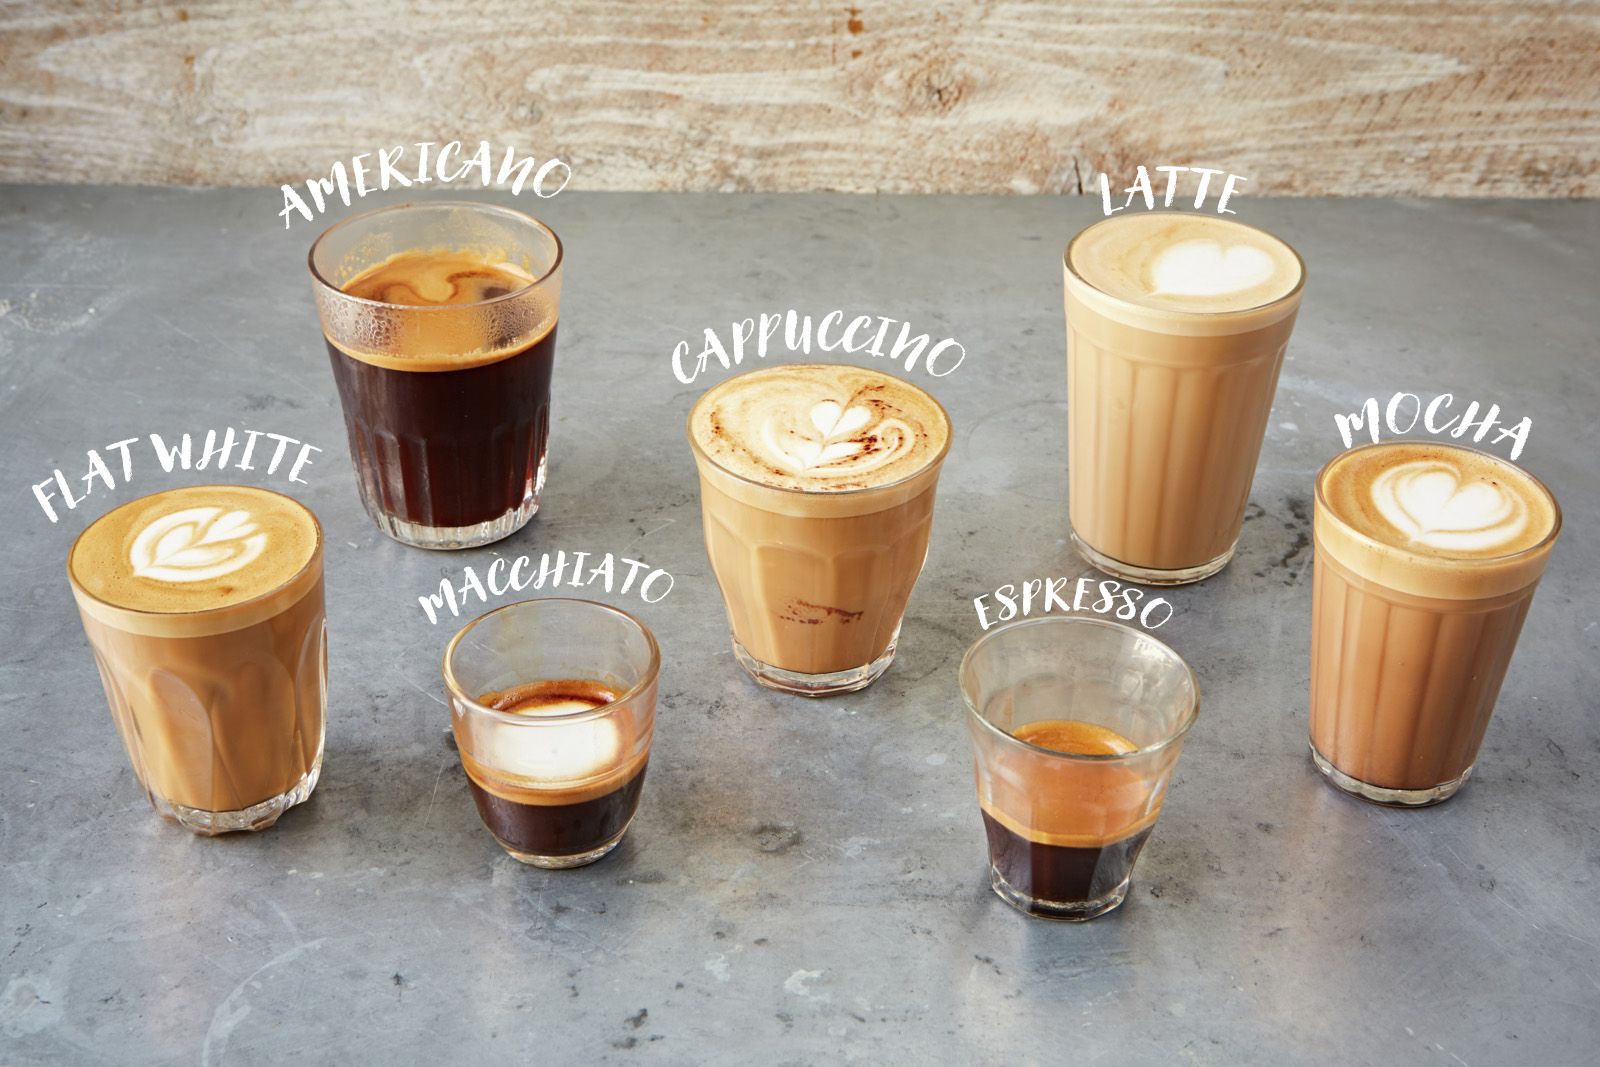 意式咖啡机意式咖啡壶美式咖啡和意式咖啡特点10.jpg